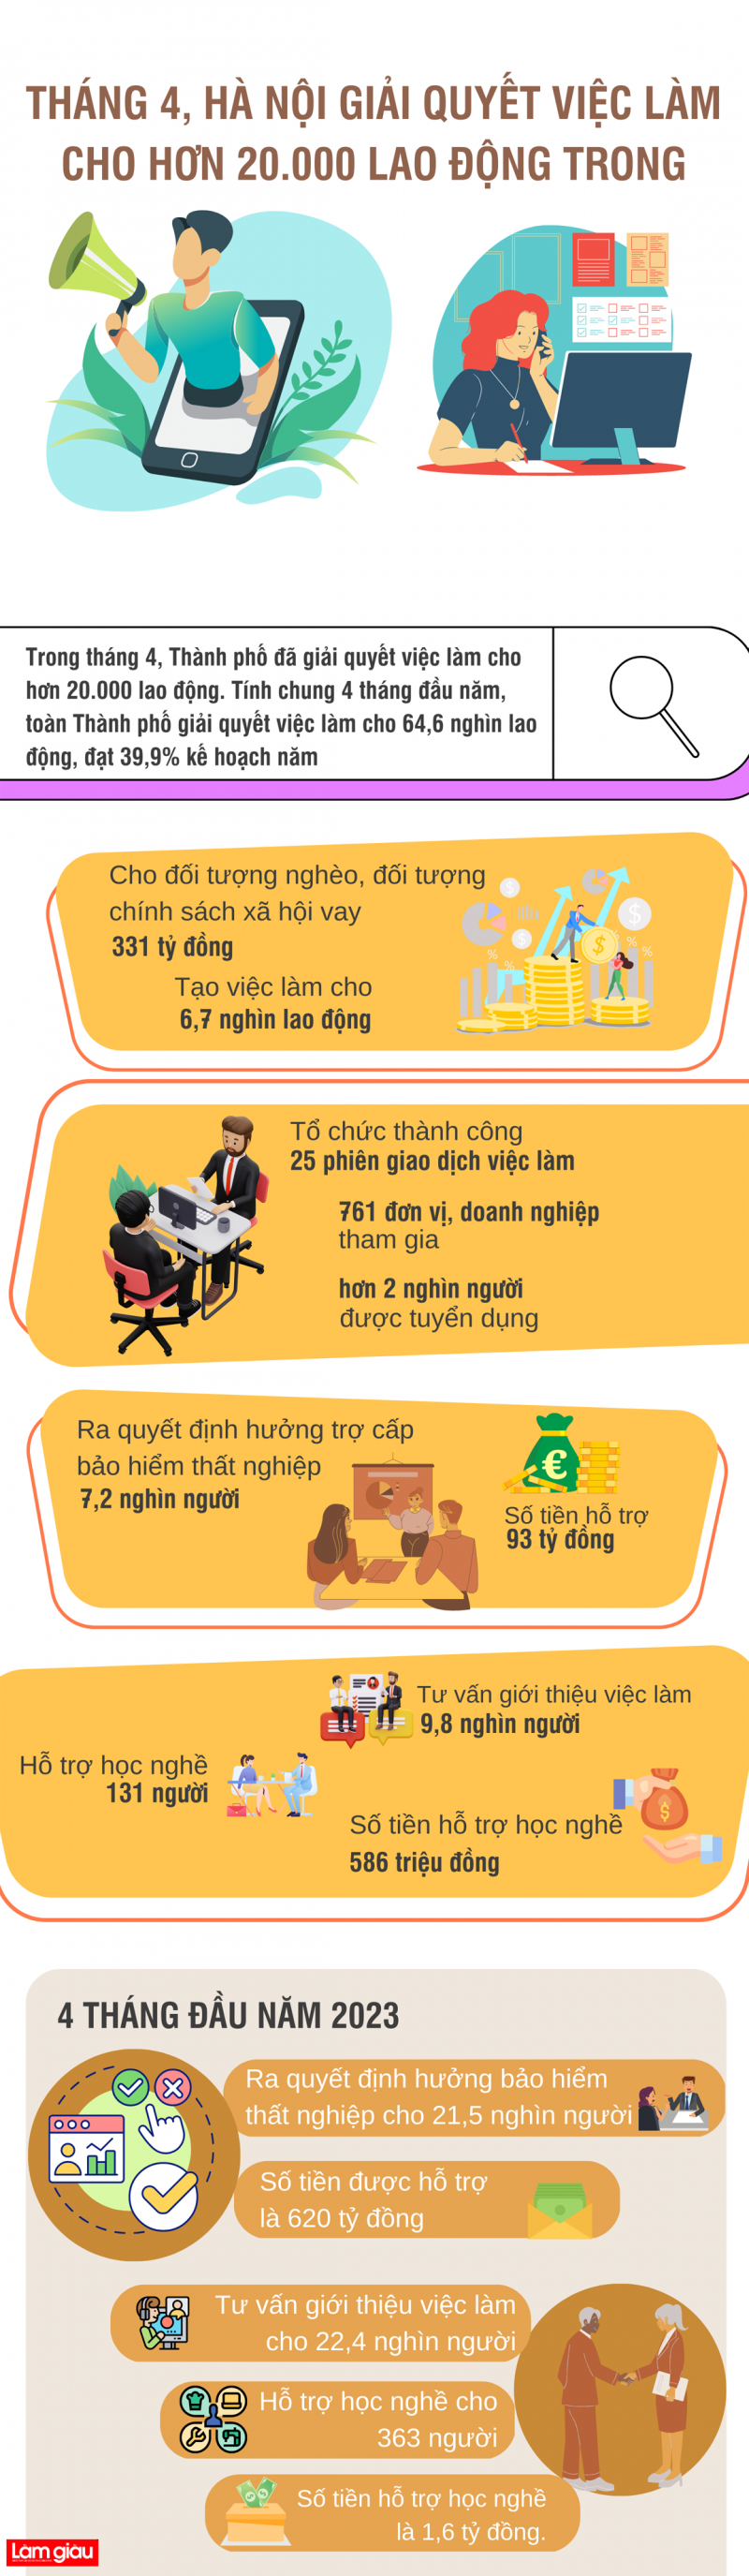 [Infographic]: Hà Nội giải quyết việc làm cho hơn 20.000 lao động trong tháng 4